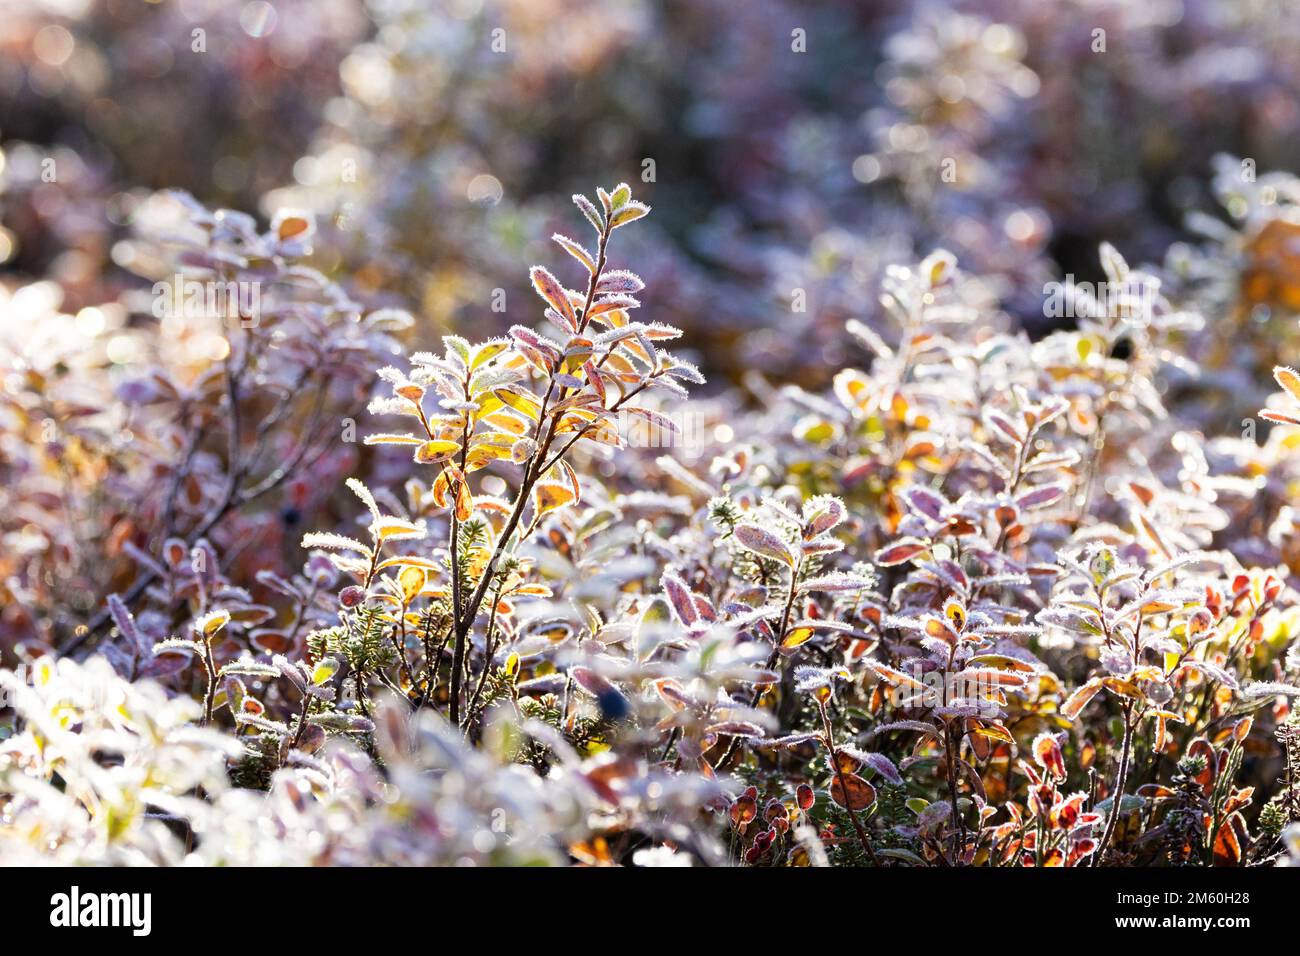 Des feuilles de myrtille de la grenouille se trouvent dans le parc national de Salla, dans le nord de la Finlande, au cours d'une matinée d'automne froide Banque D'Images